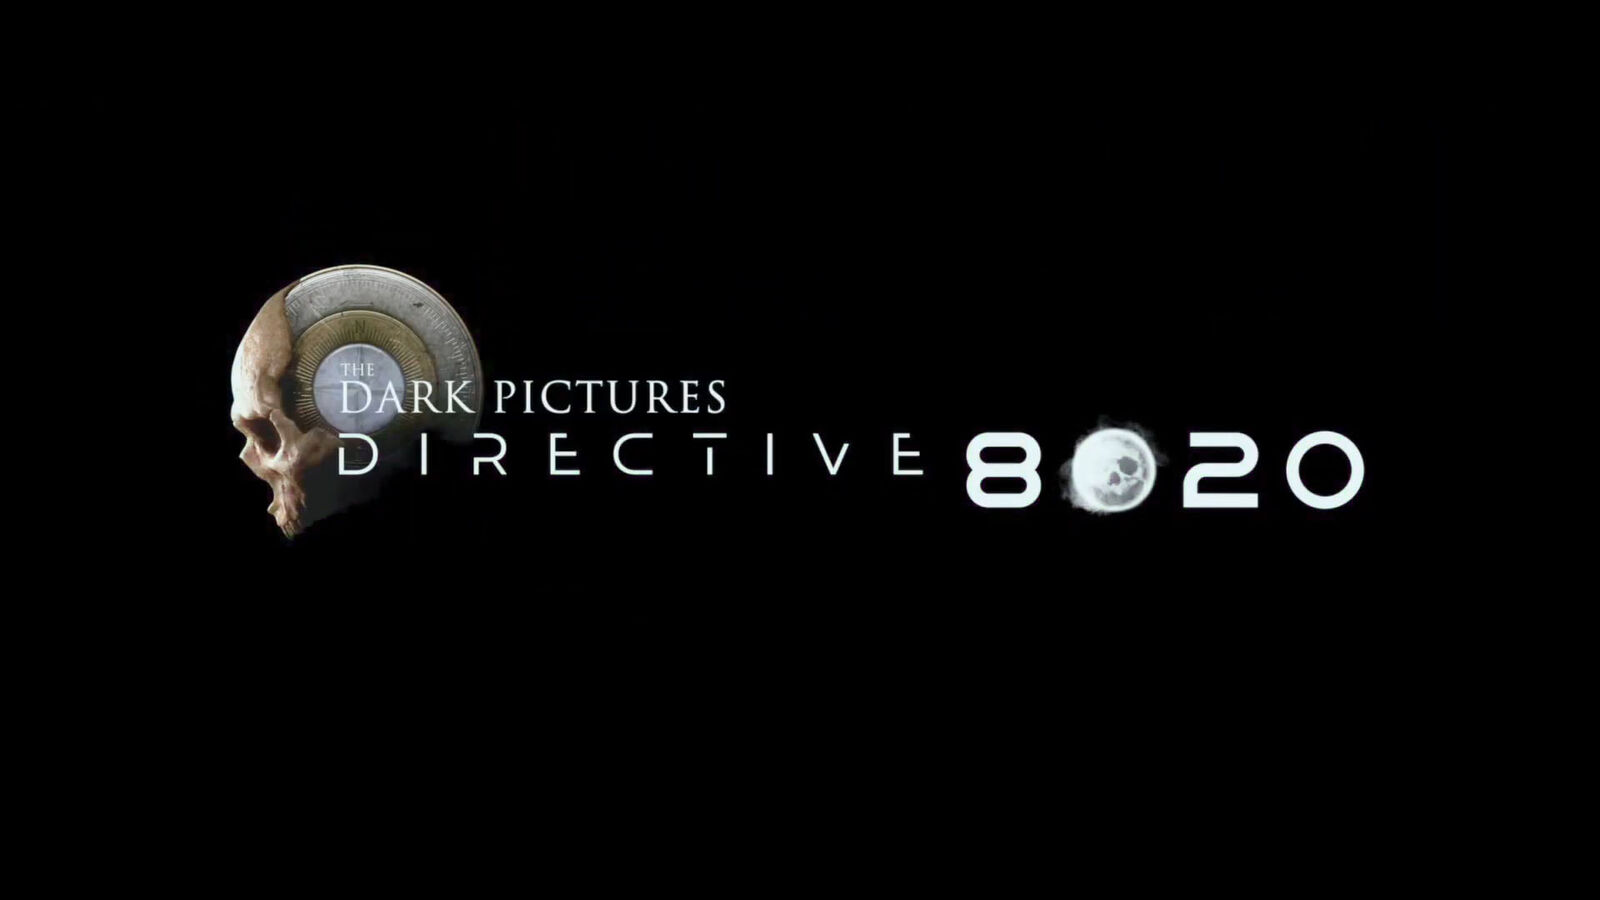 Unikl trailer na další hru The Dark Pictures Anthology, směrnice 8020